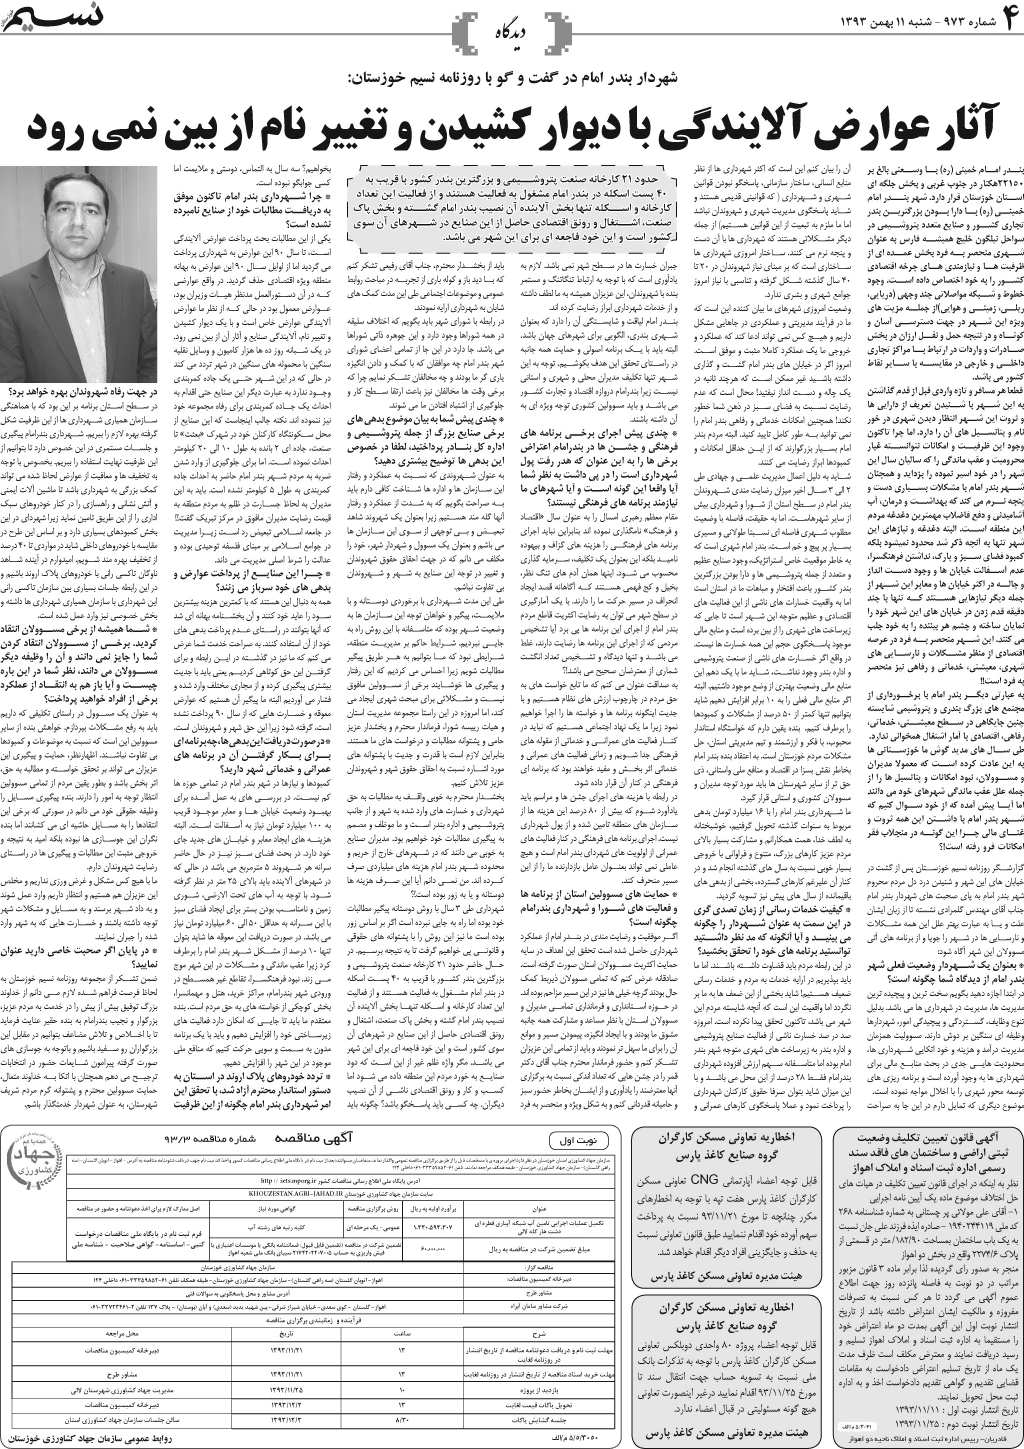 صفحه دیدگاه روزنامه نسیم شماره 973